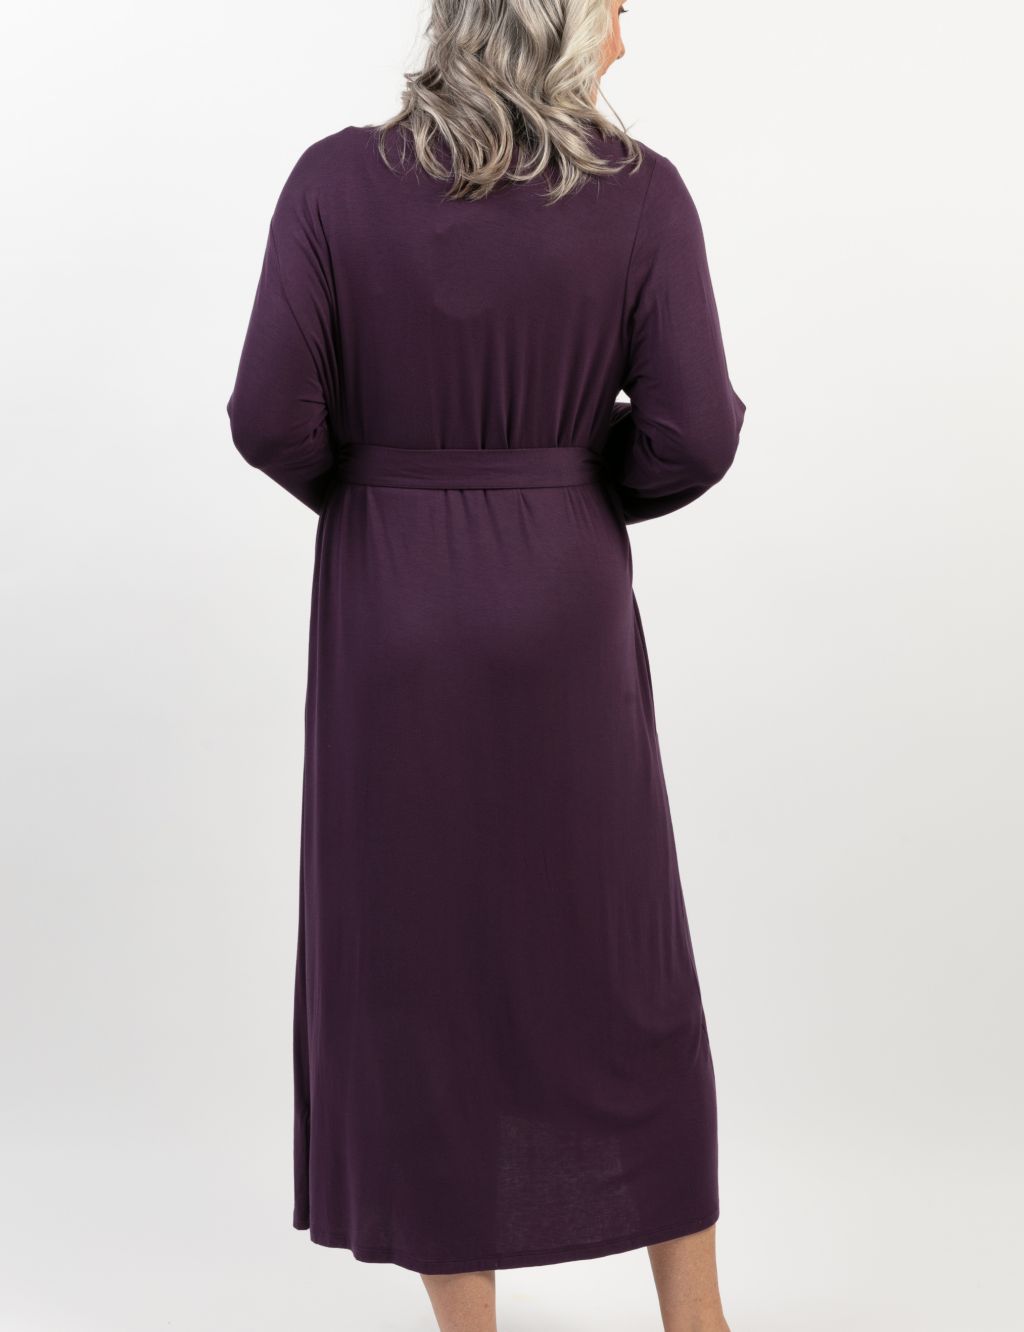 Modal Rich Lace Trim Long Dressing Gown image 3